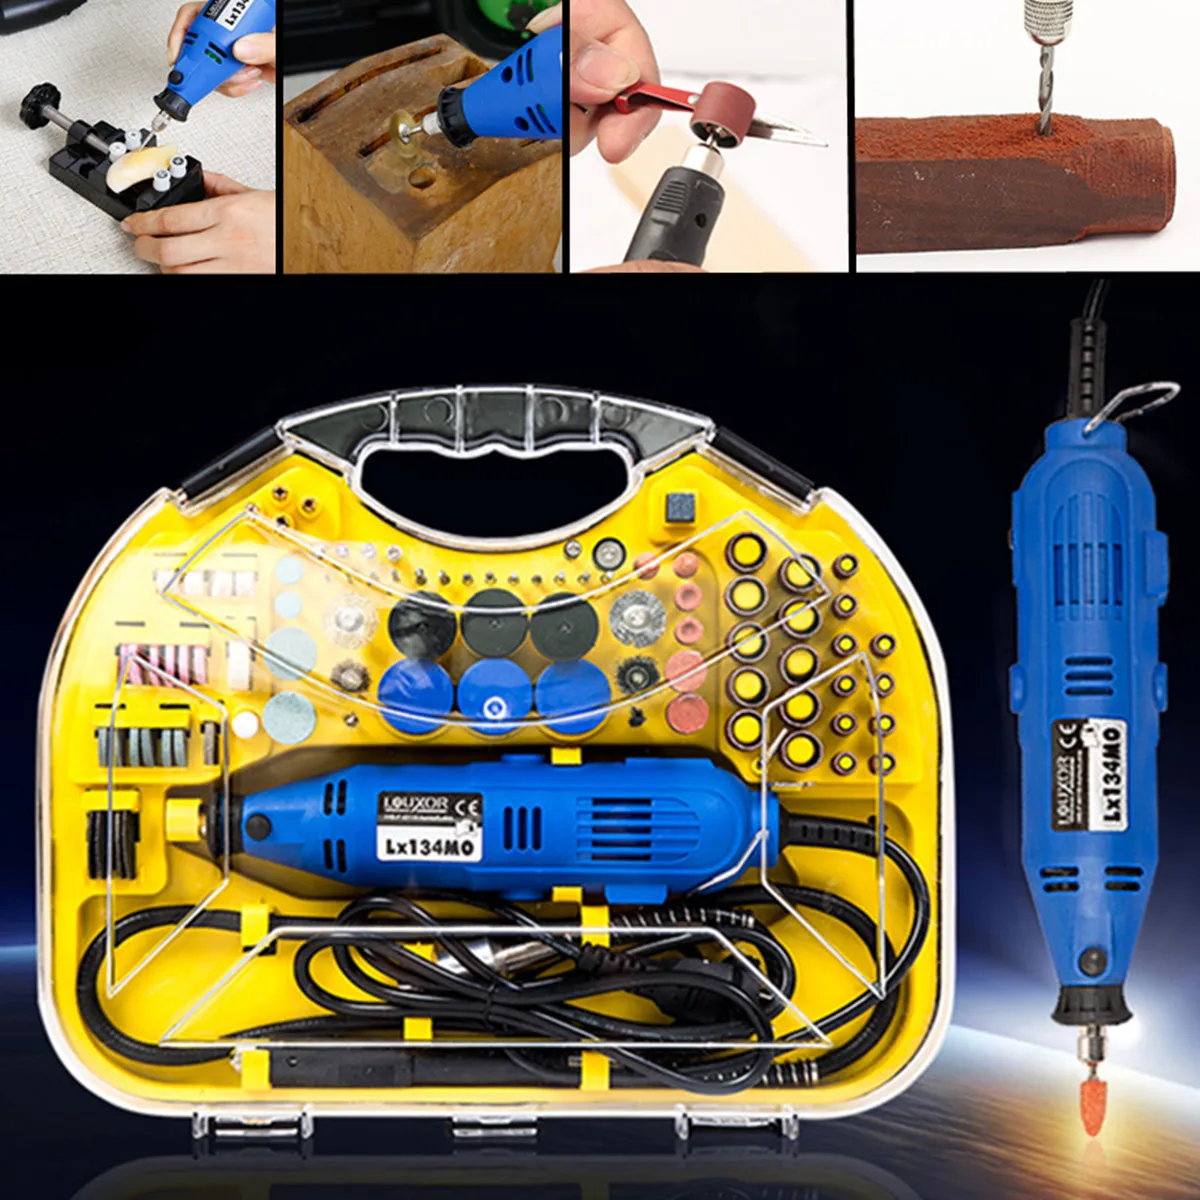 

211Pcs Electric Rotary Drill Grinder Engraver Sander Polisher US Plug DIY Craft Tool Set 220V/110V 50-60Hz Cable Length 1.8m